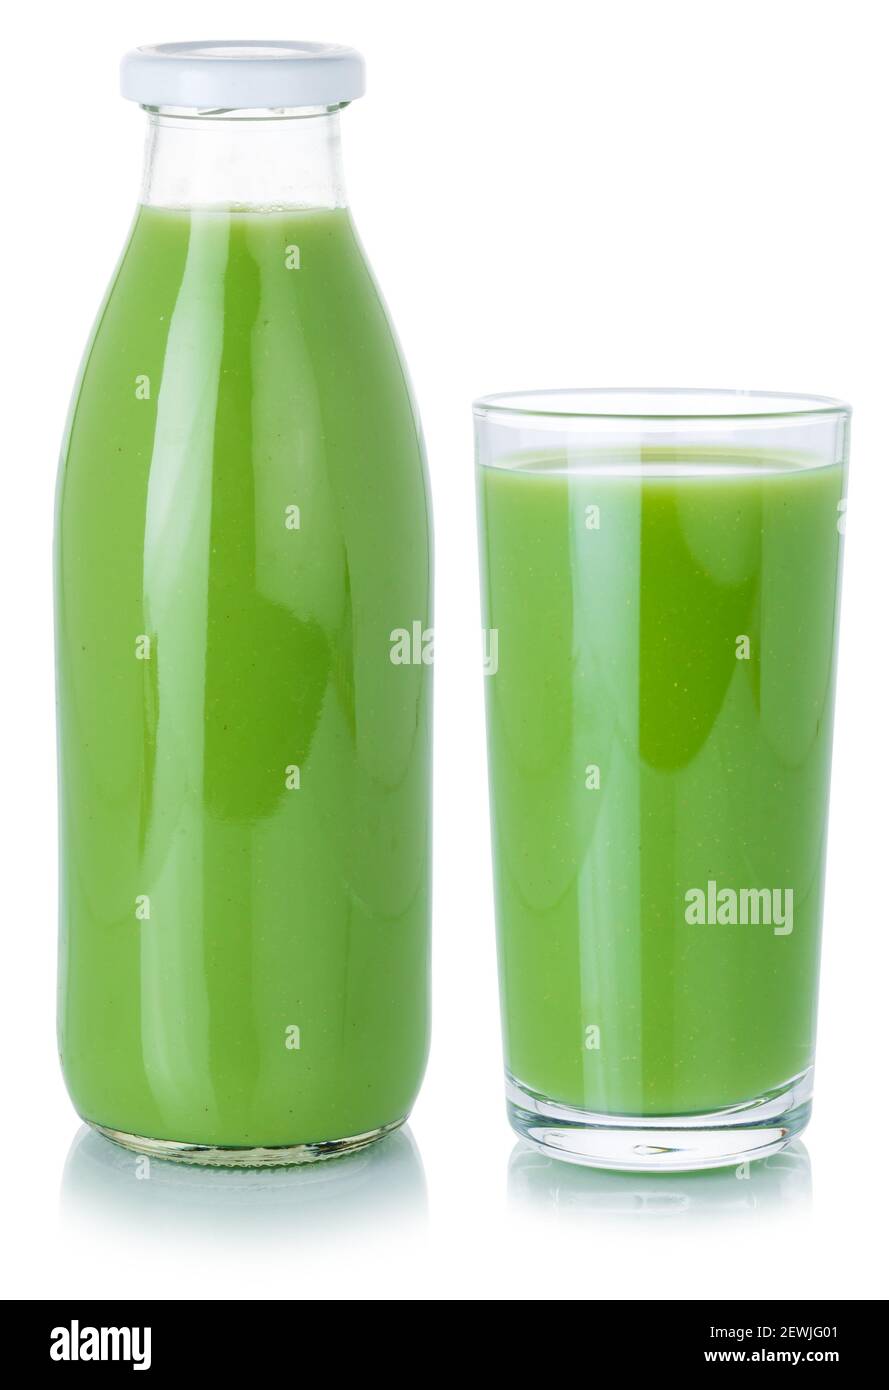 Fruchtsaft grün Smoothie Getränk in einer Flasche und Glas isoliert auf einem weißen Hintergrund. Stockfoto